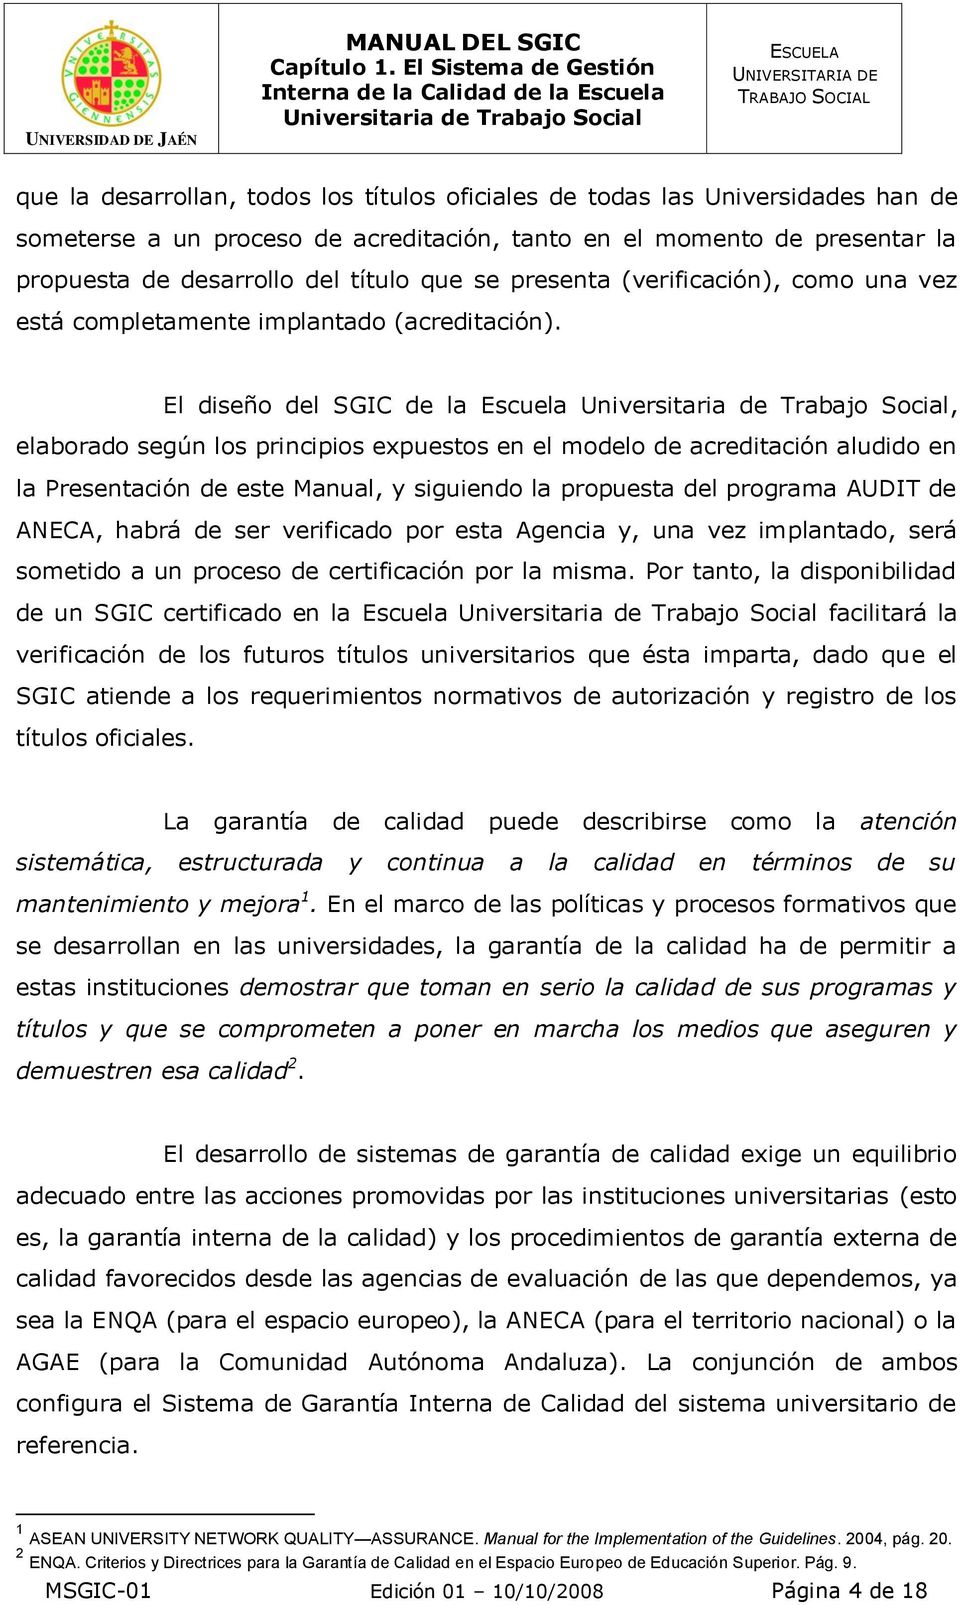 El diseño del SGIC de la Escuela, elaborado según los principios expuestos en el modelo de acreditación aludido en la Presentación de este Manual, y siguiendo la propuesta del programa AUDIT de